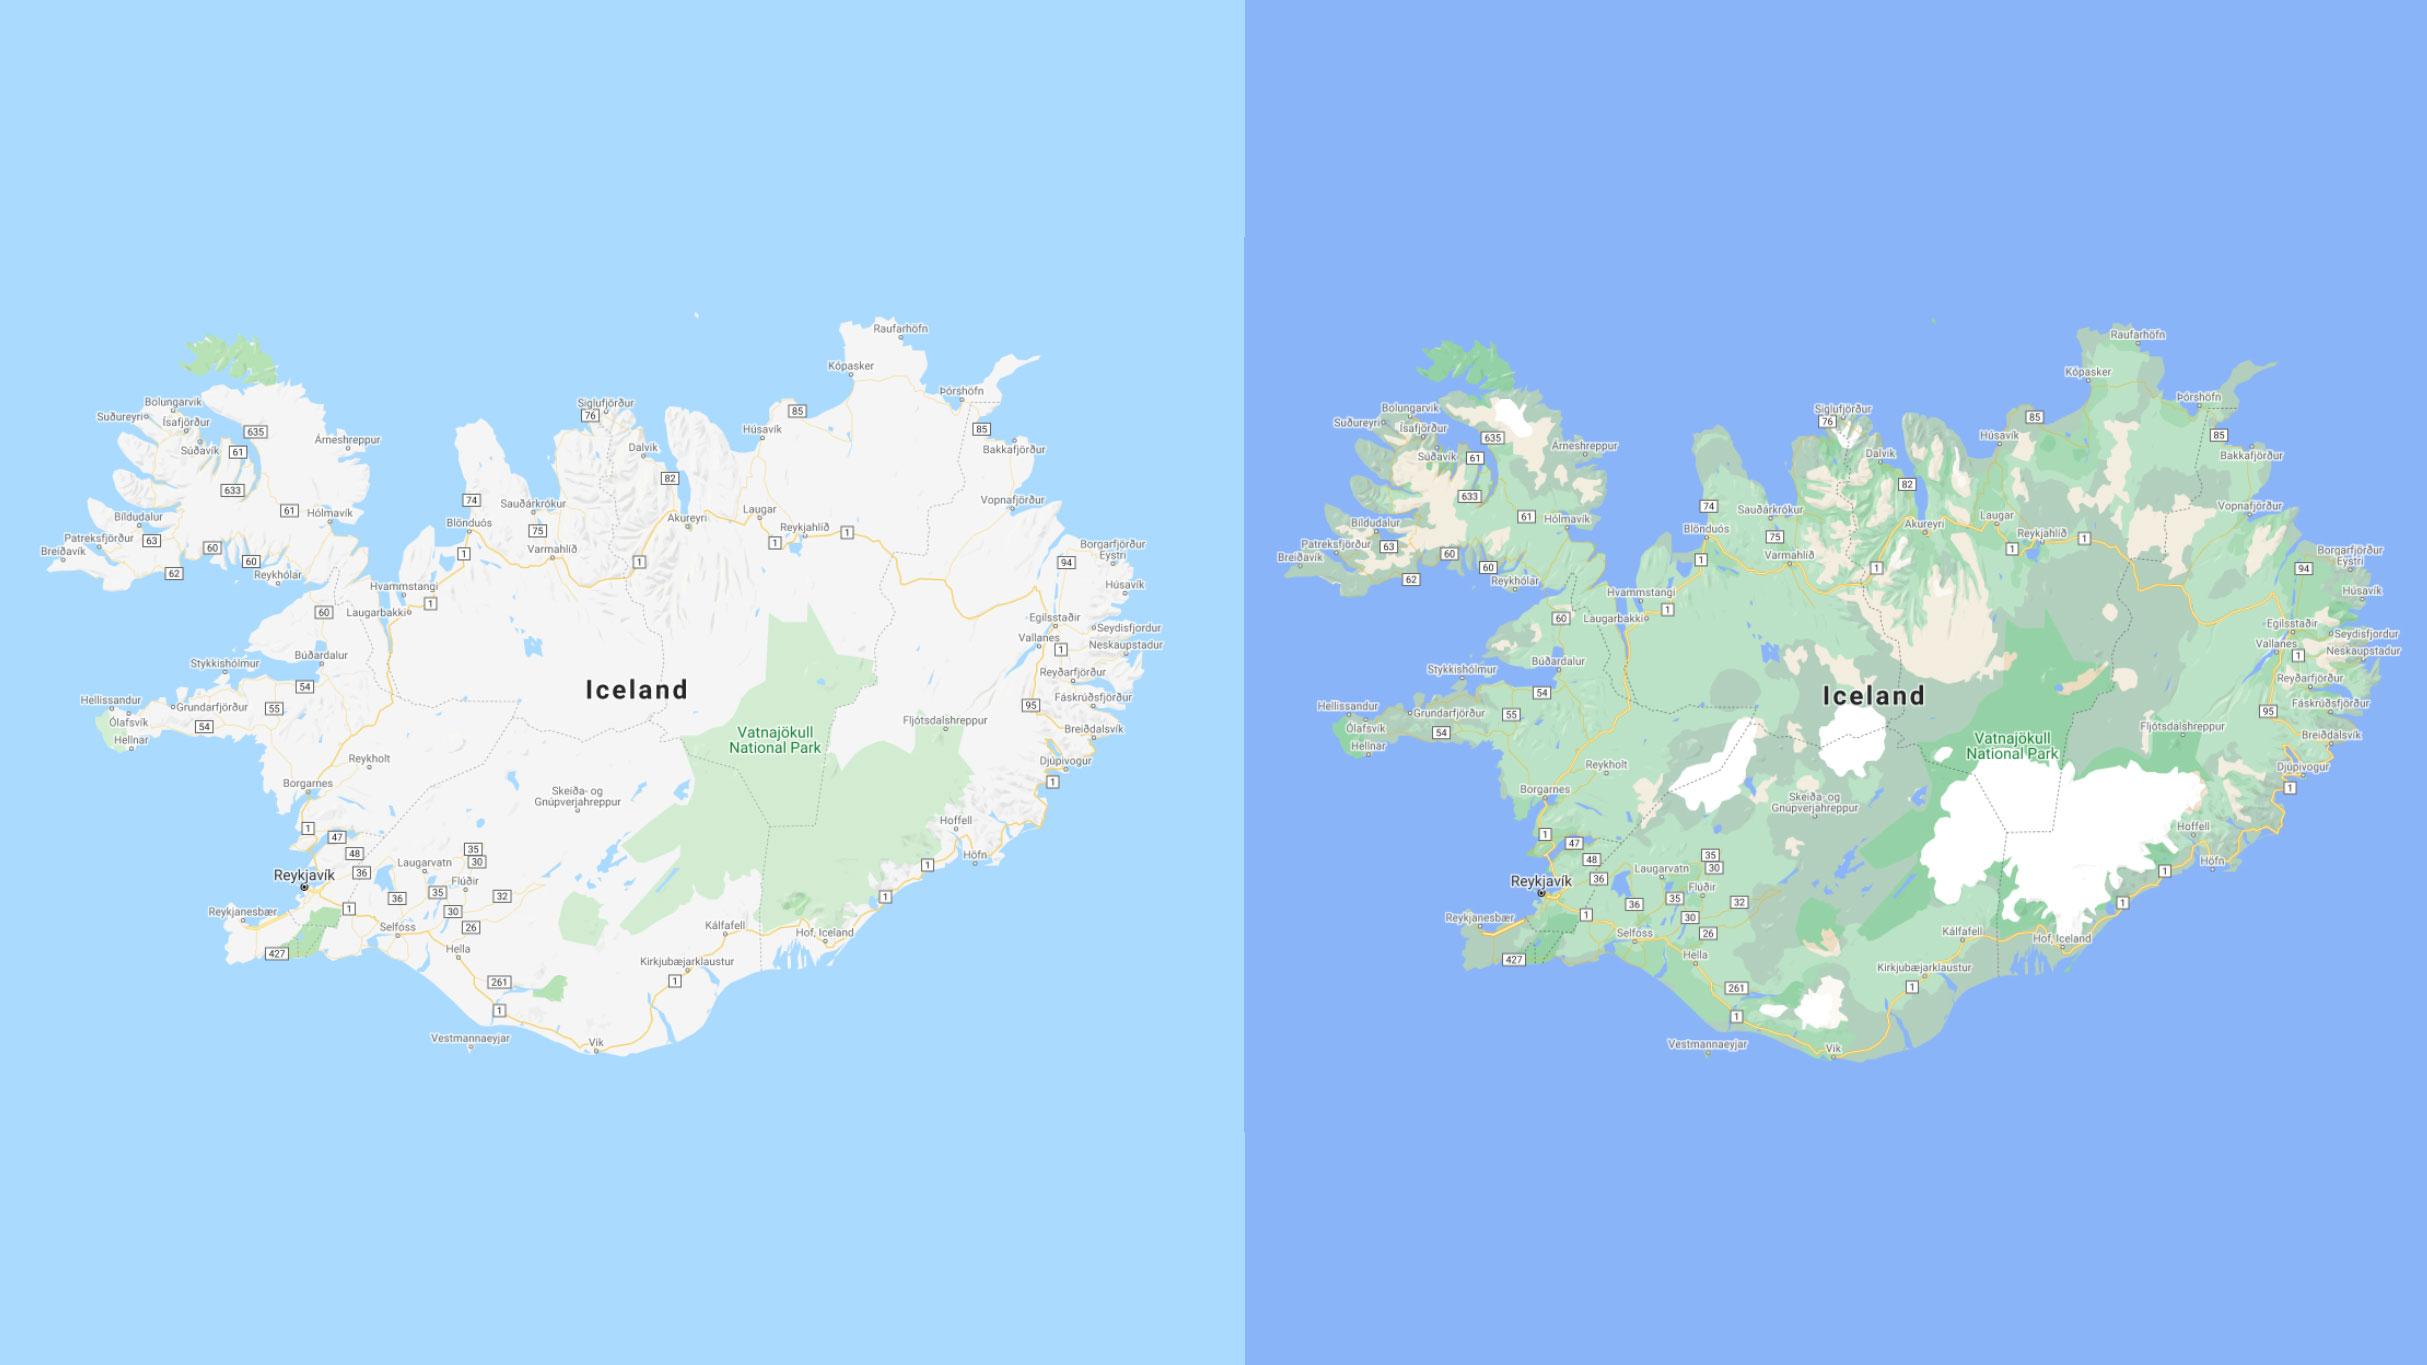 Det blir mye lettere å se de forskjellige naturområdene på Island etter oppdateringen, med tydelige skiller der isbreene ligger. 